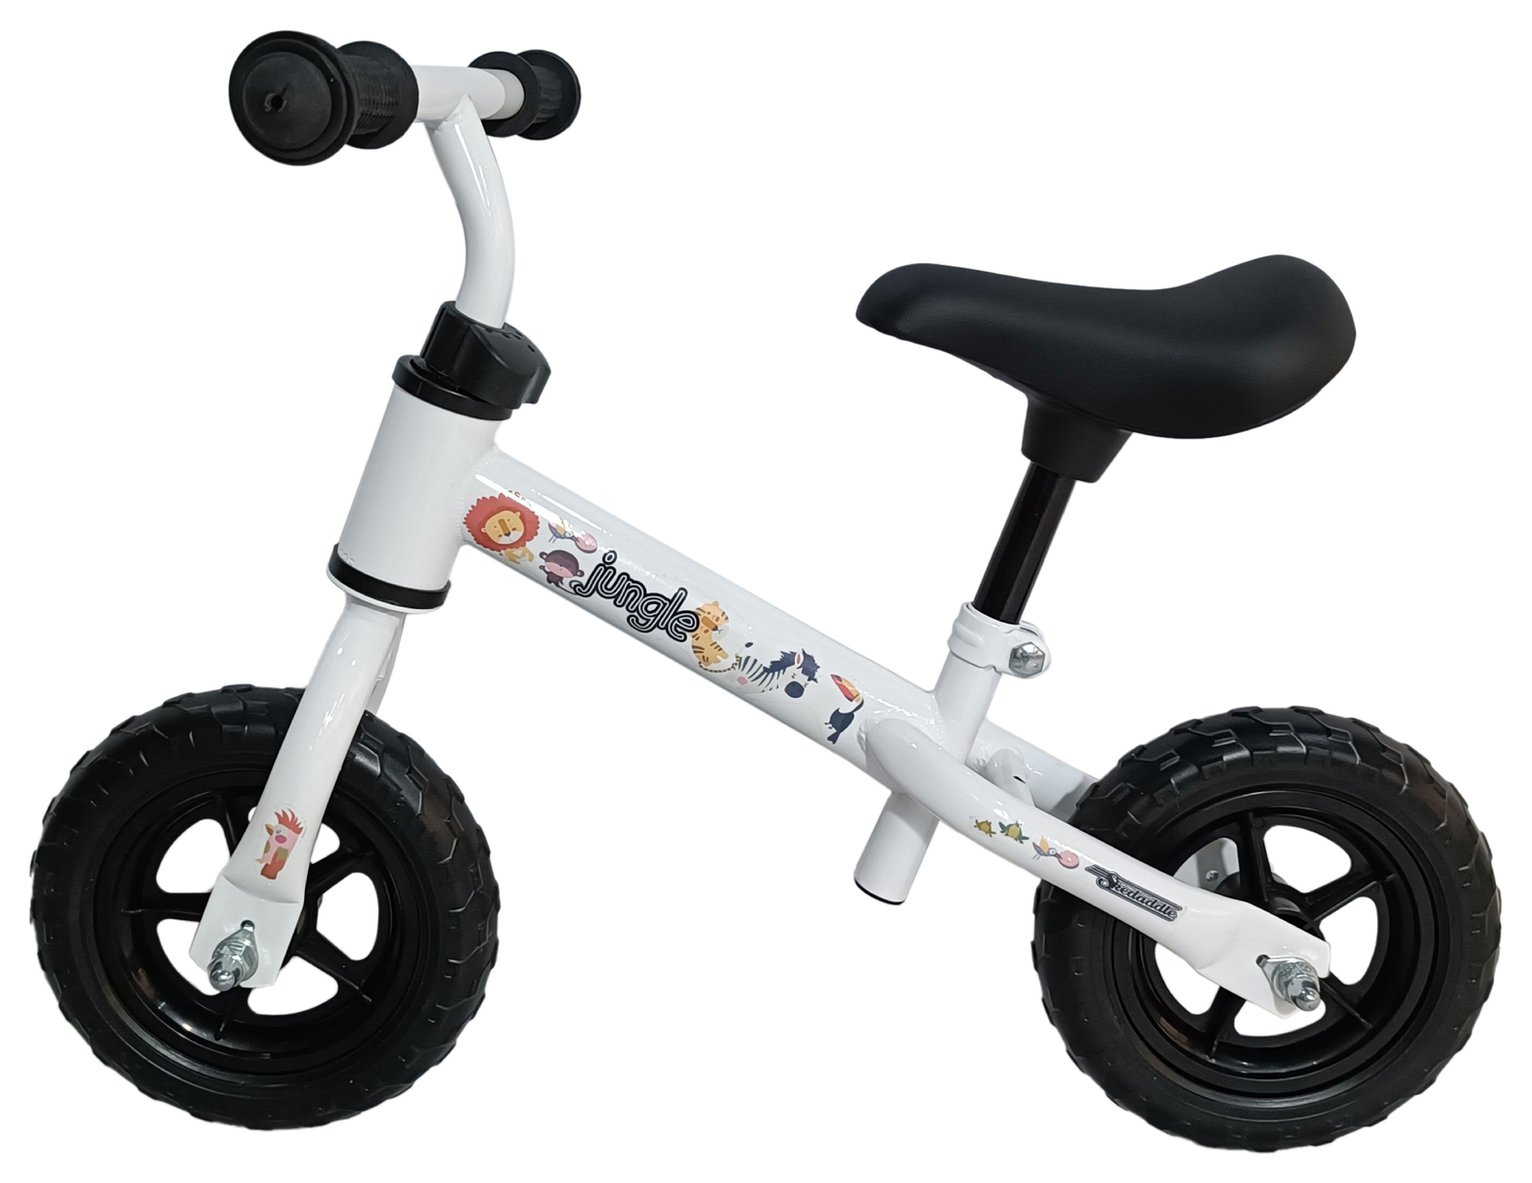 Skedaddle 8inch Wheel Size Unisex Balance Bike - White